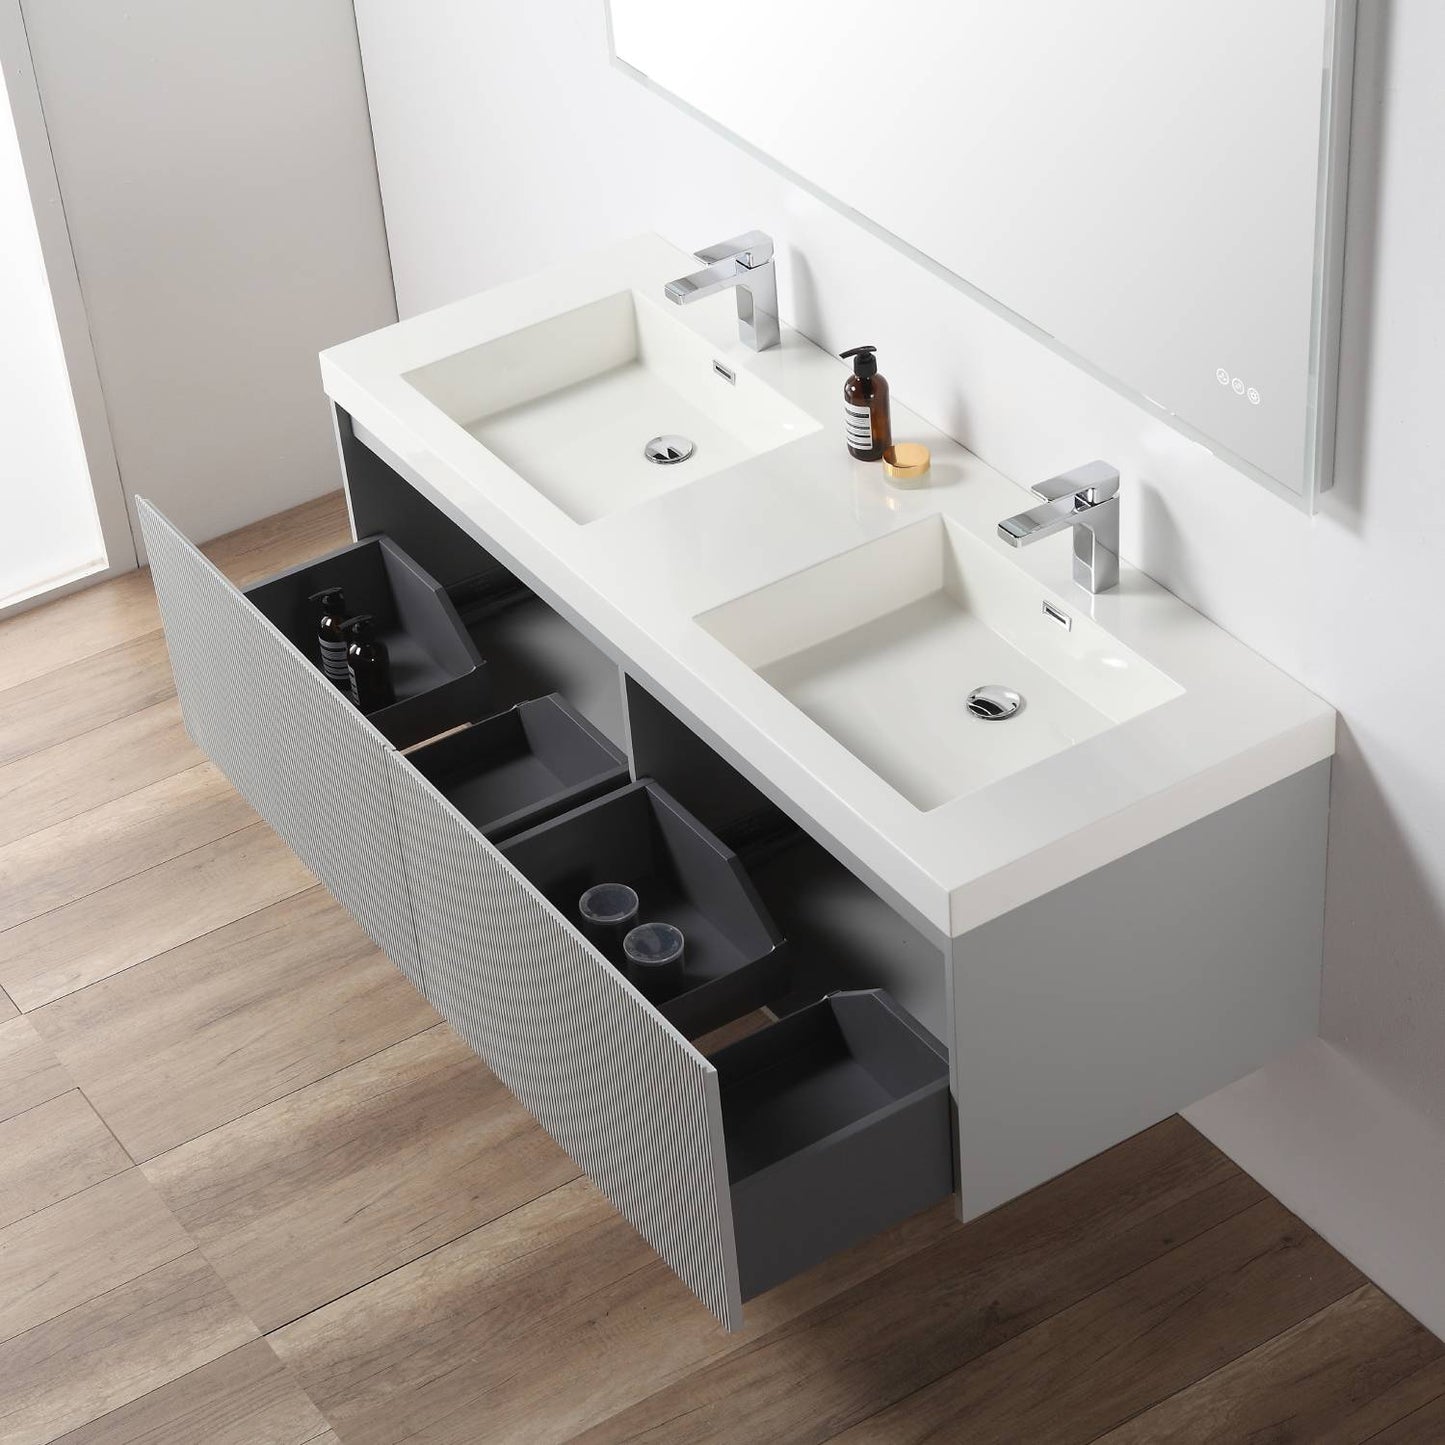 Positano 60" Floating Bathroom Vanity with Acrylic Sinks - Light Grey